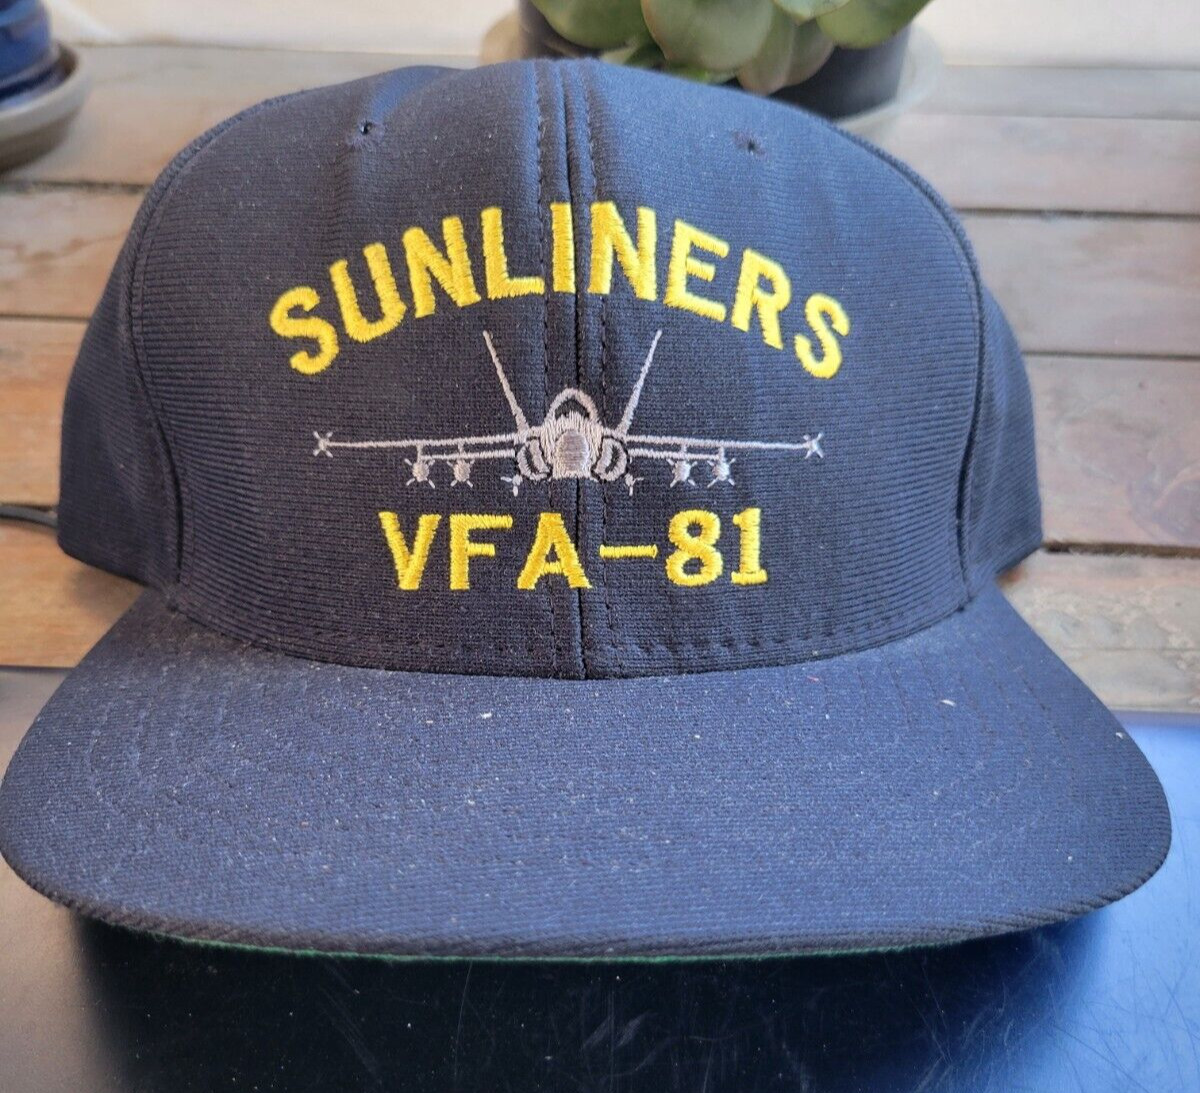 U.S. NAVY SUNLINERS VFA-81 ADJUSTABLE TRUCKER BASEBALL CAP HAT